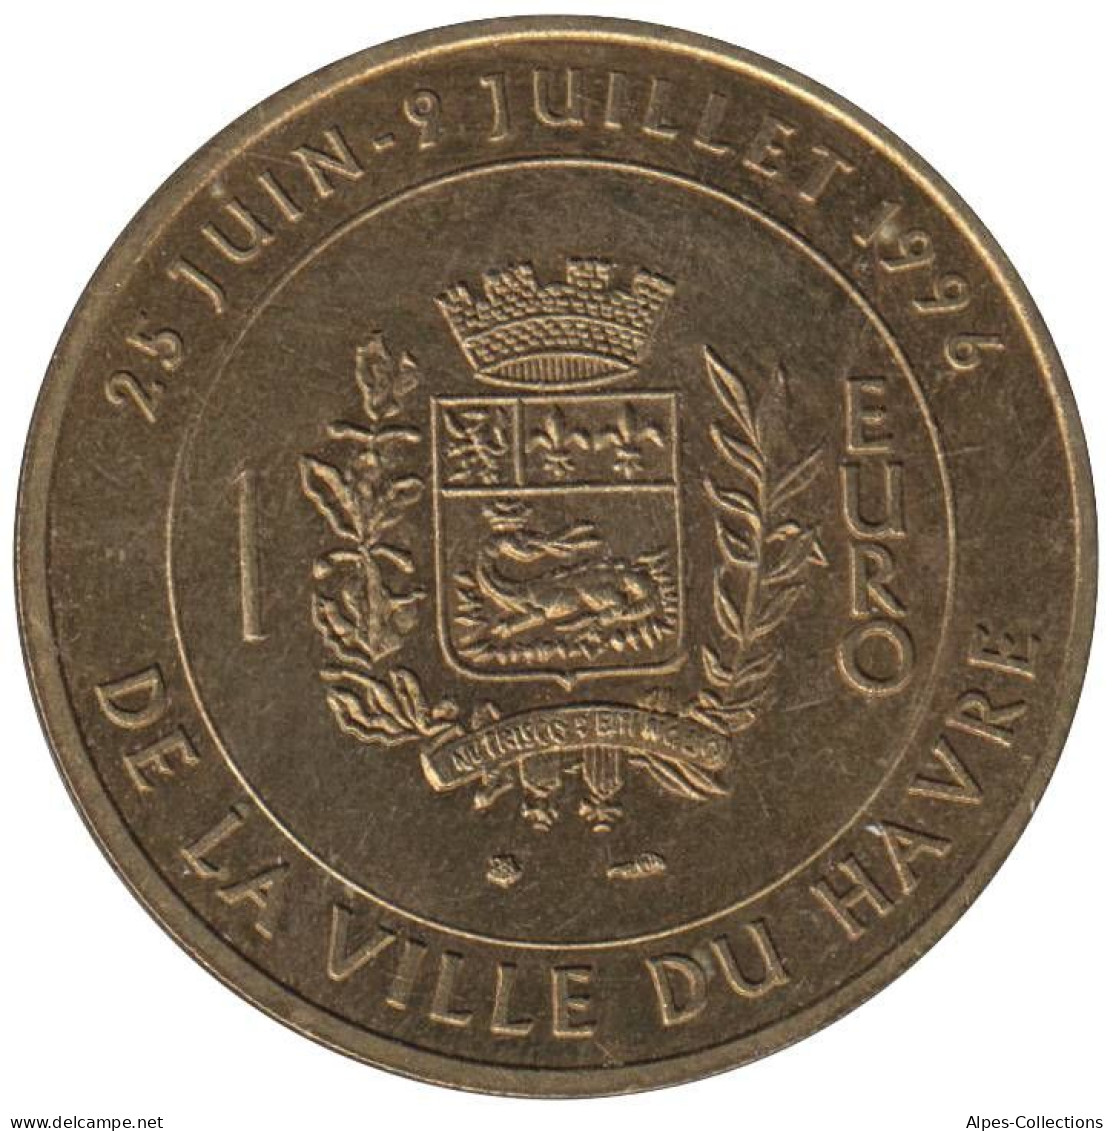 LE HAVRE - EU0010.2 - 1 EURO DES VILLES - Réf: T176 - 1996 - Euros Of The Cities